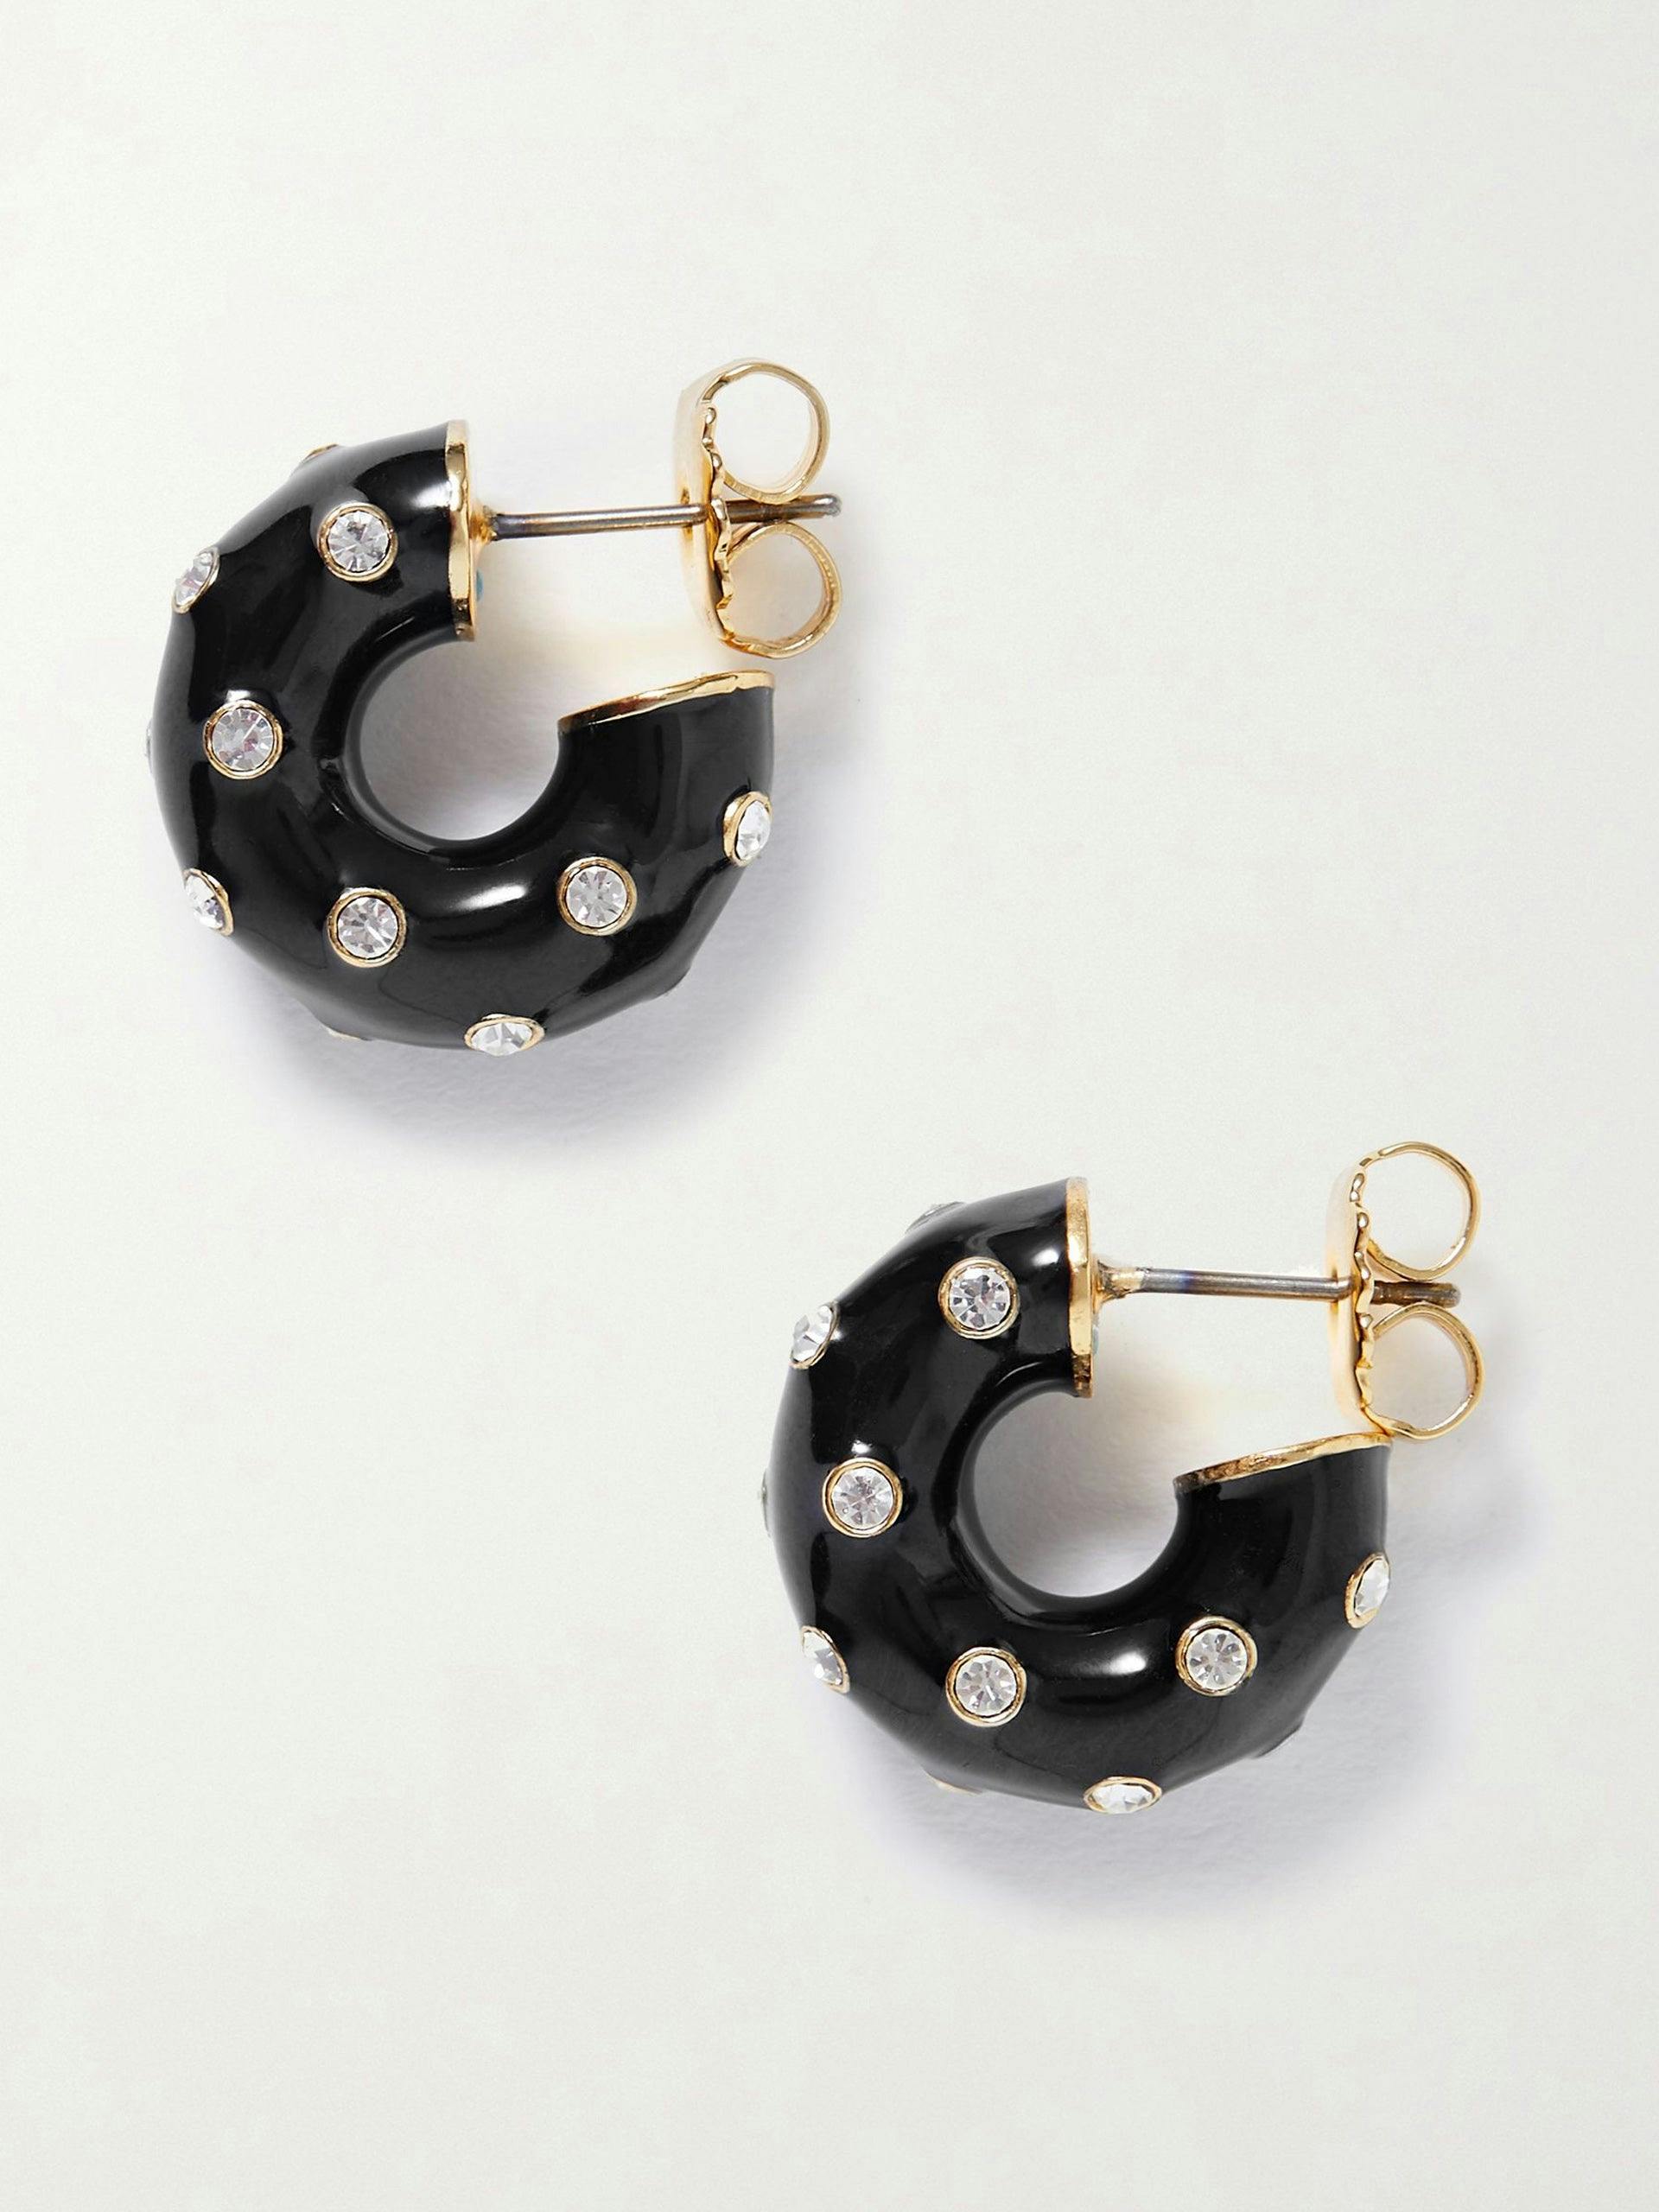 Black enamel earrings with cubic zirconia